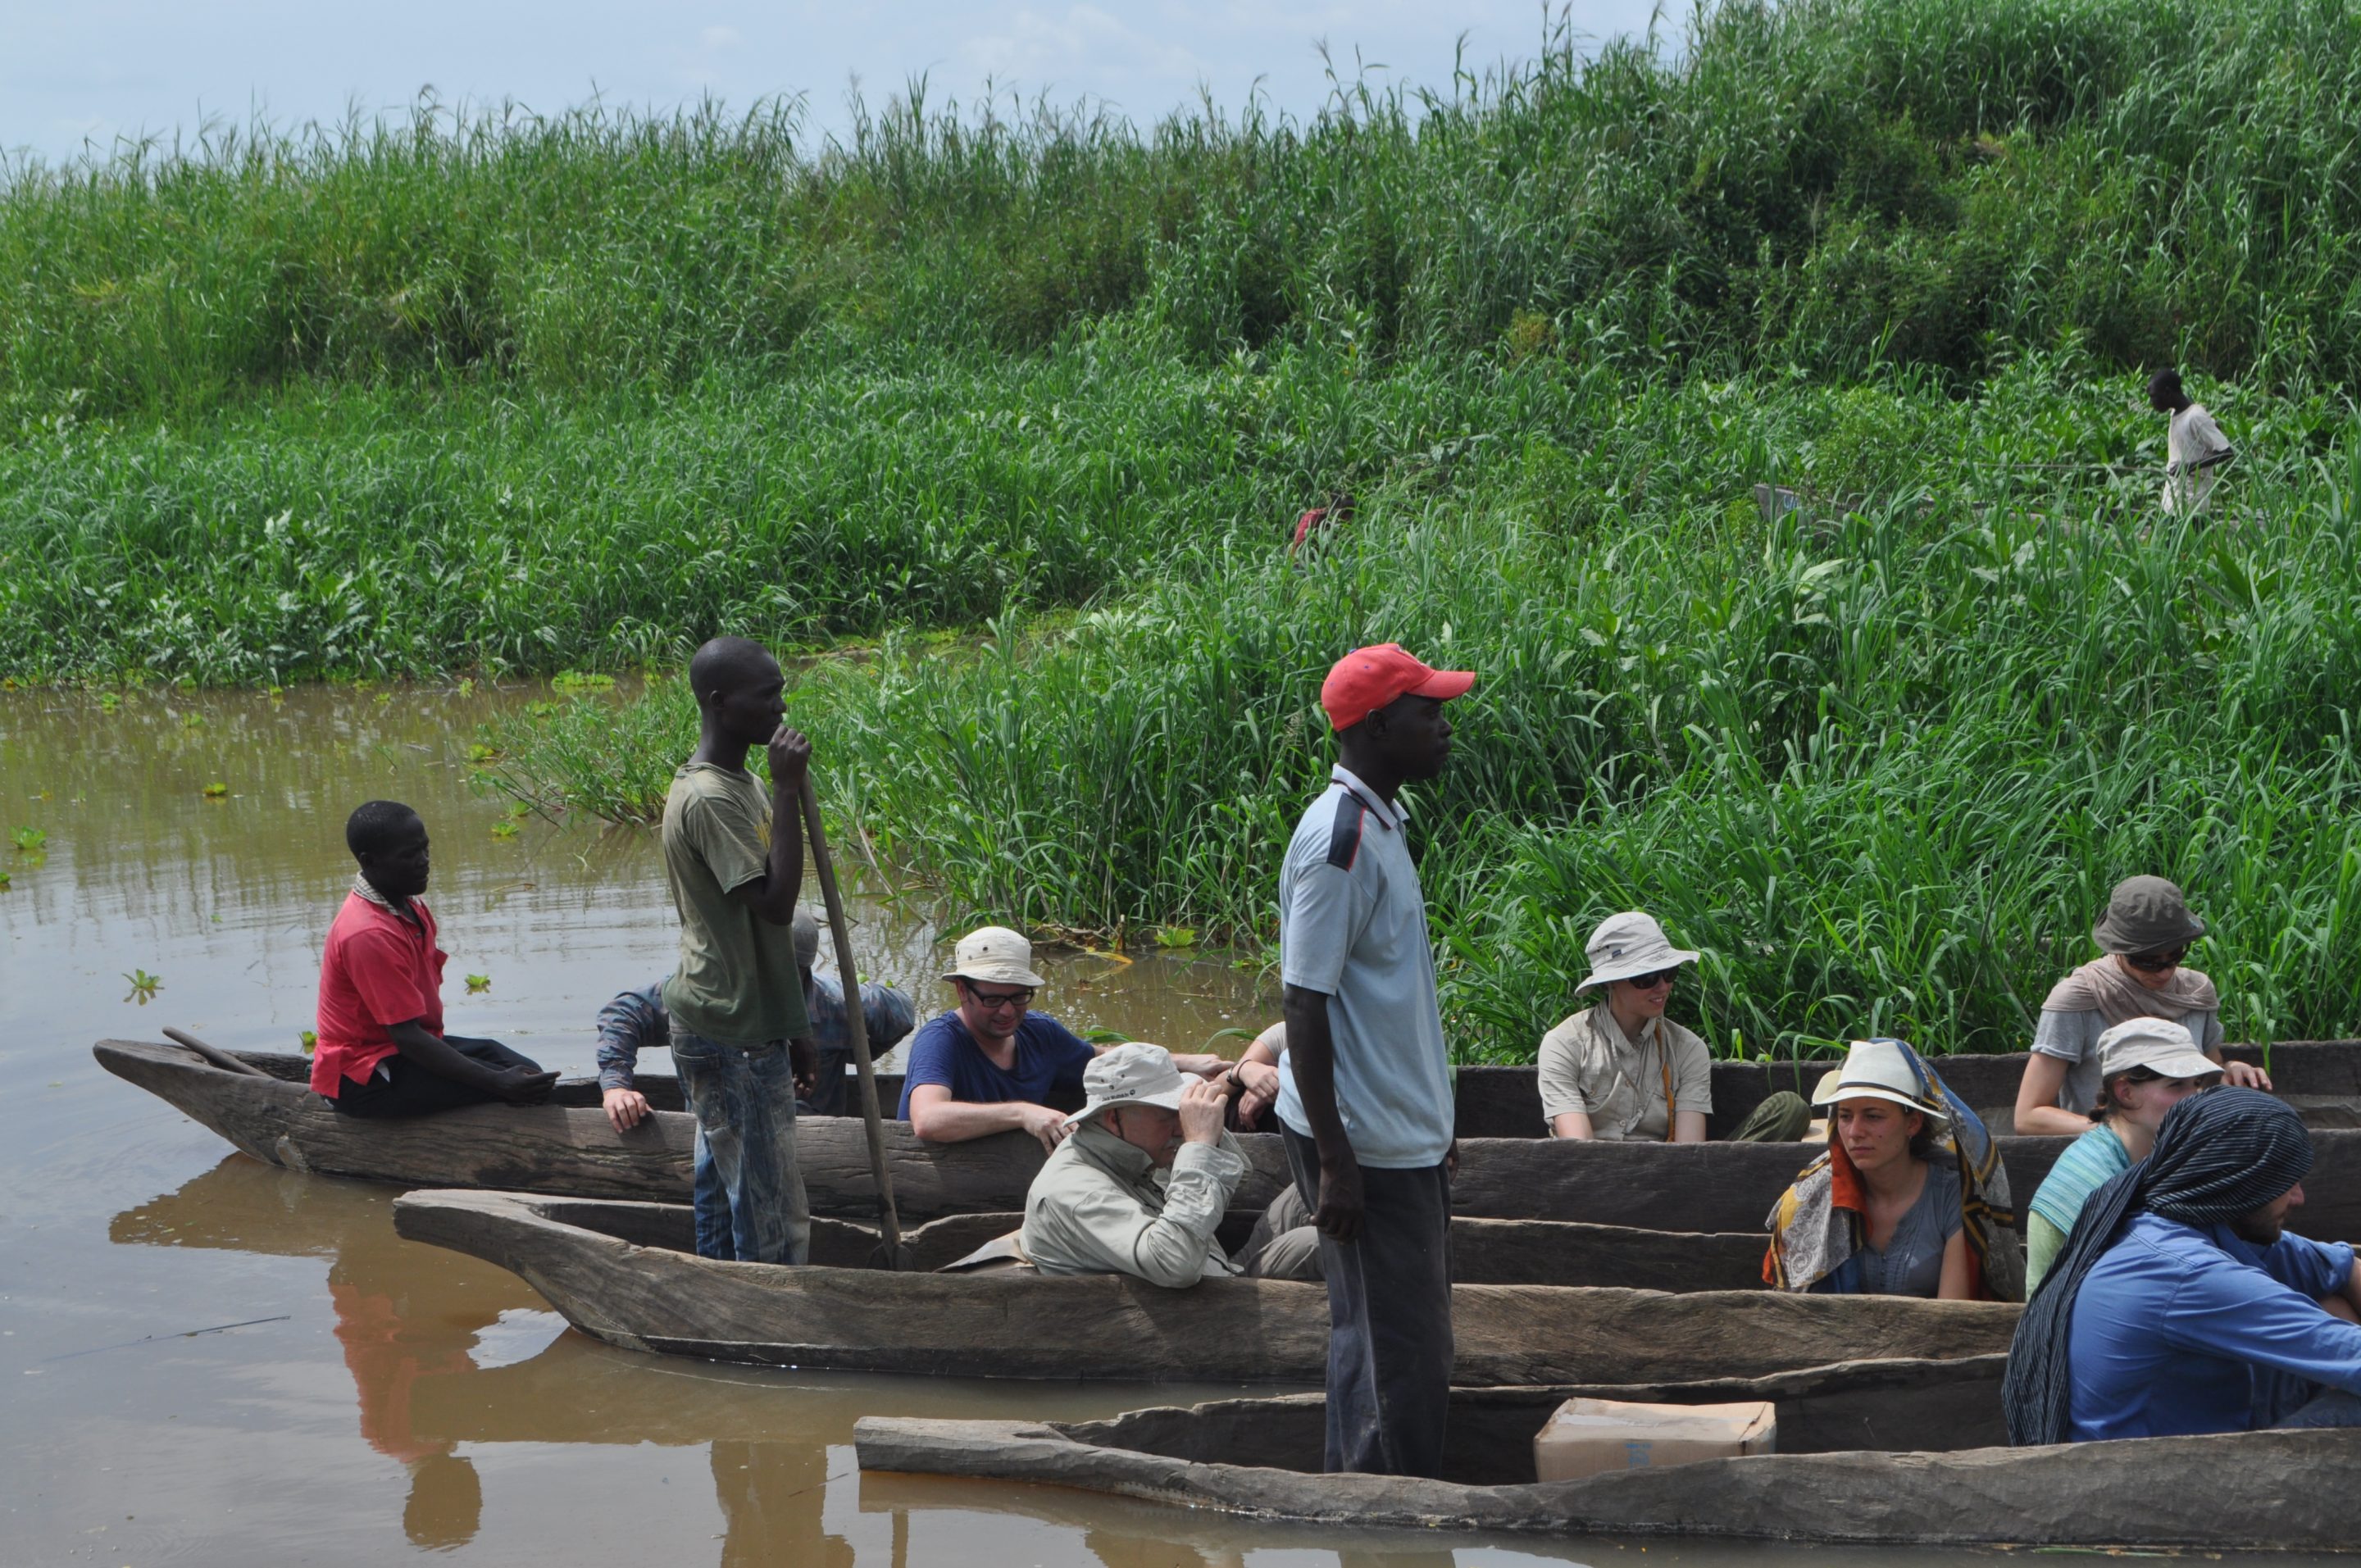 Loading the canoe